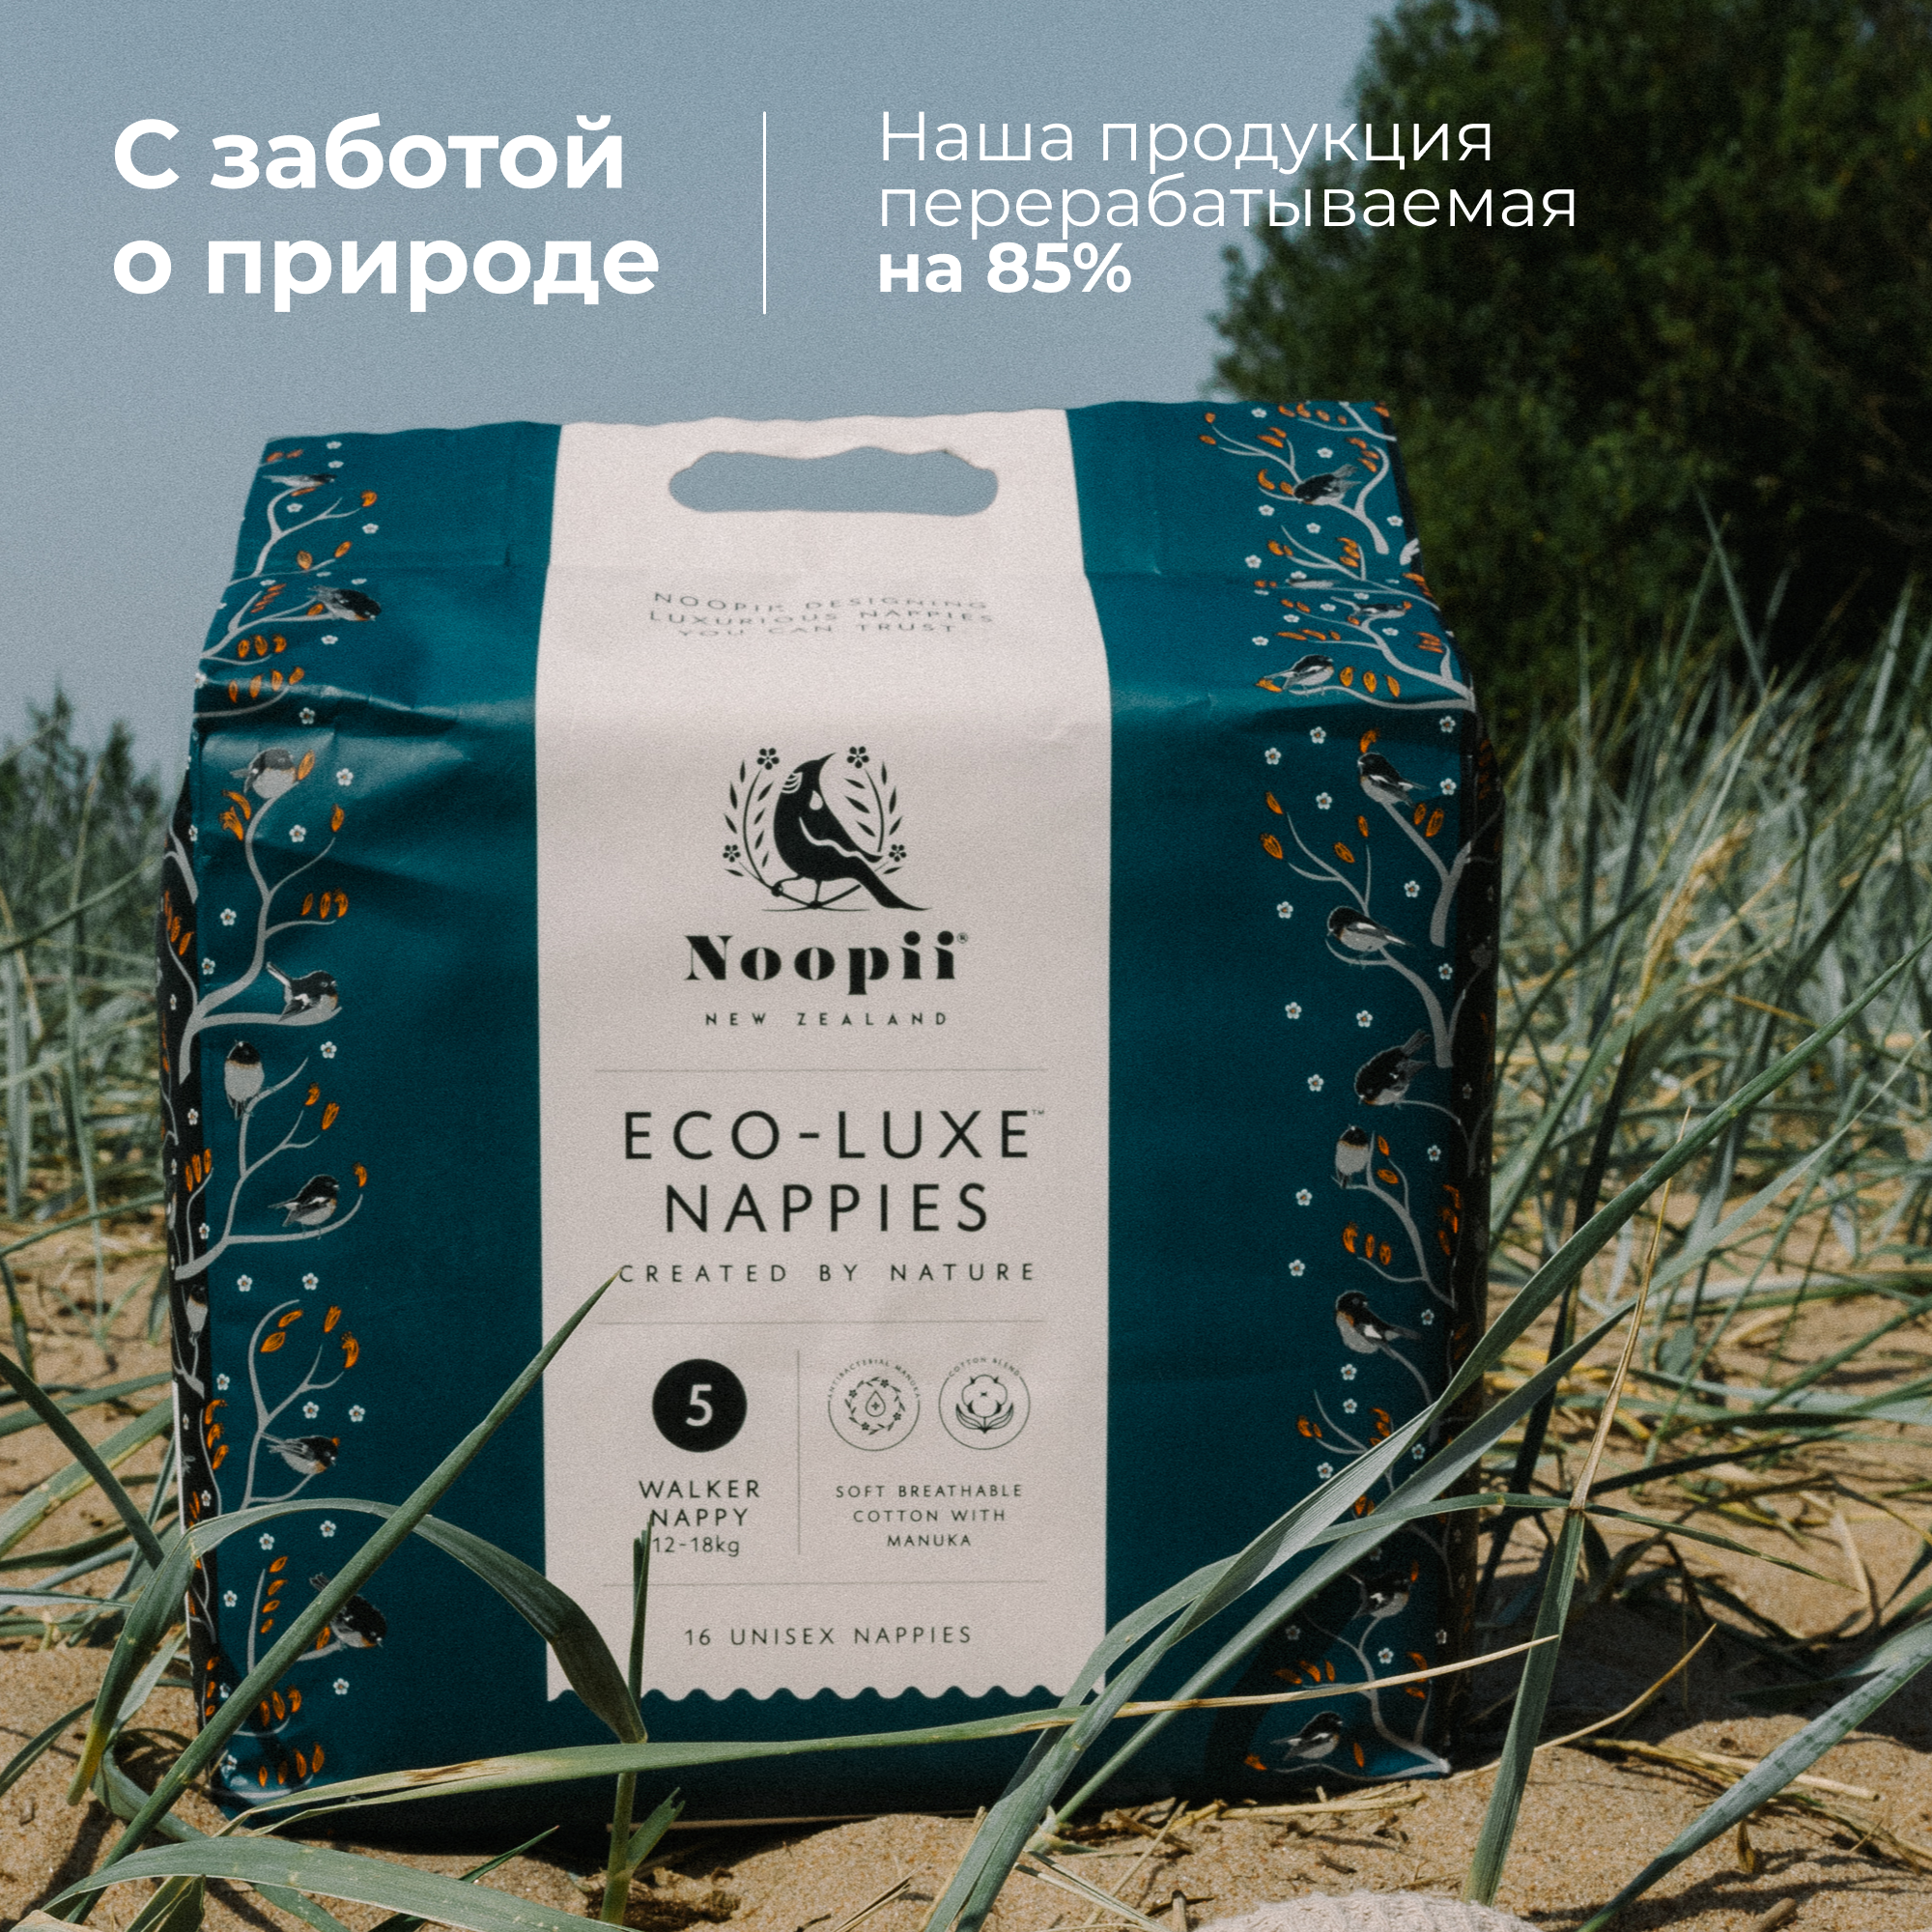 Подгузники Noopii гипоаллергенные № 5 (12-18 кг) 16 шт - фото 7